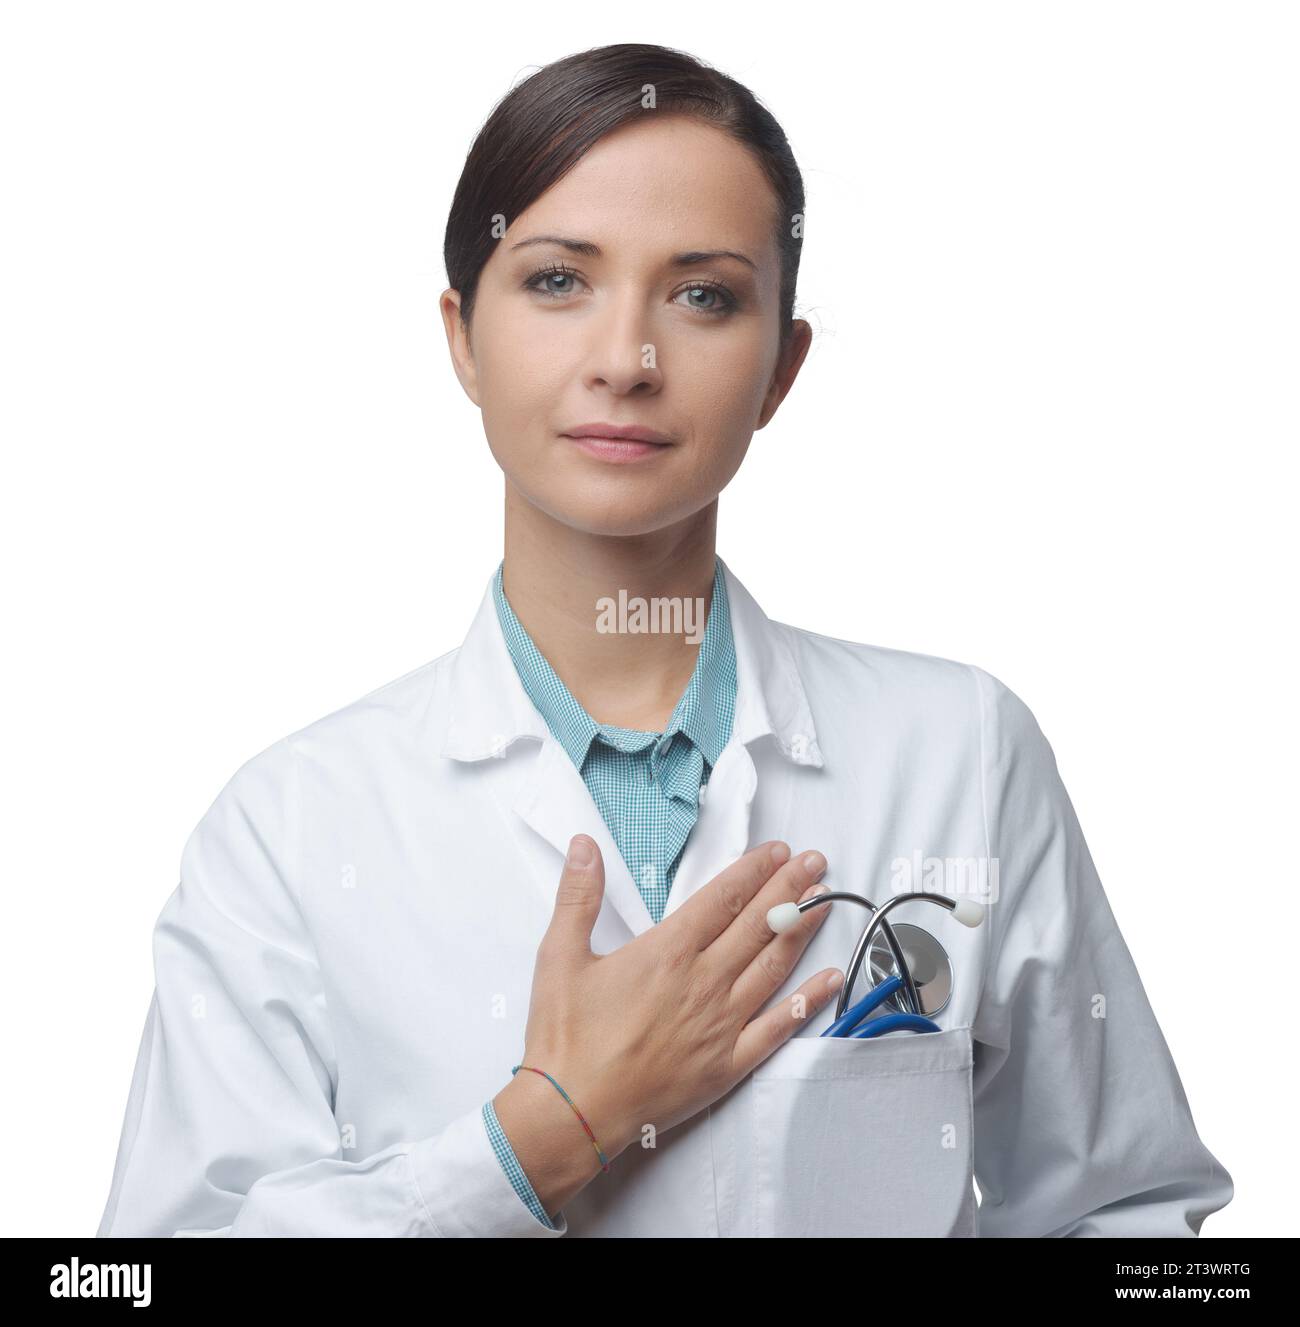 Attraktive weibliche Kardiologe mit Stethoskop und Lab Coat, ihre Brust zu berühren. Stockfoto